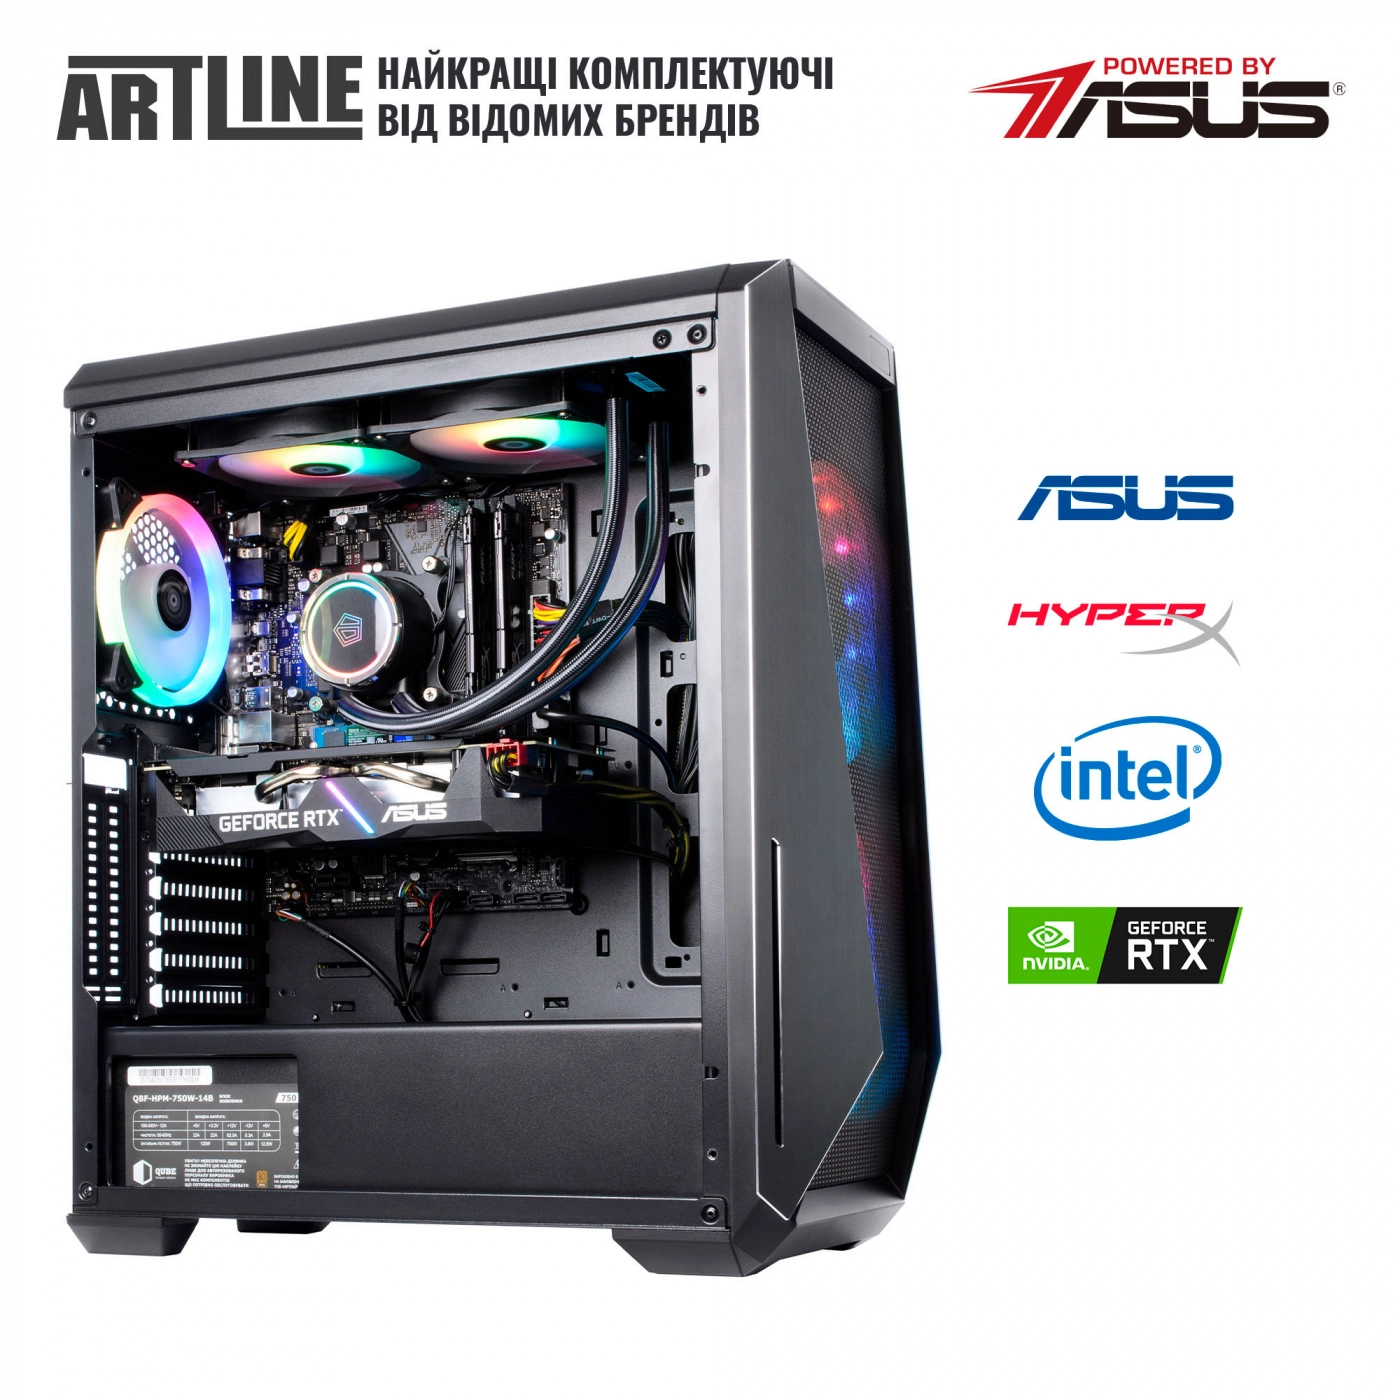 Купить Компьютер ARTLINE Gaming X79v70 - фото 8